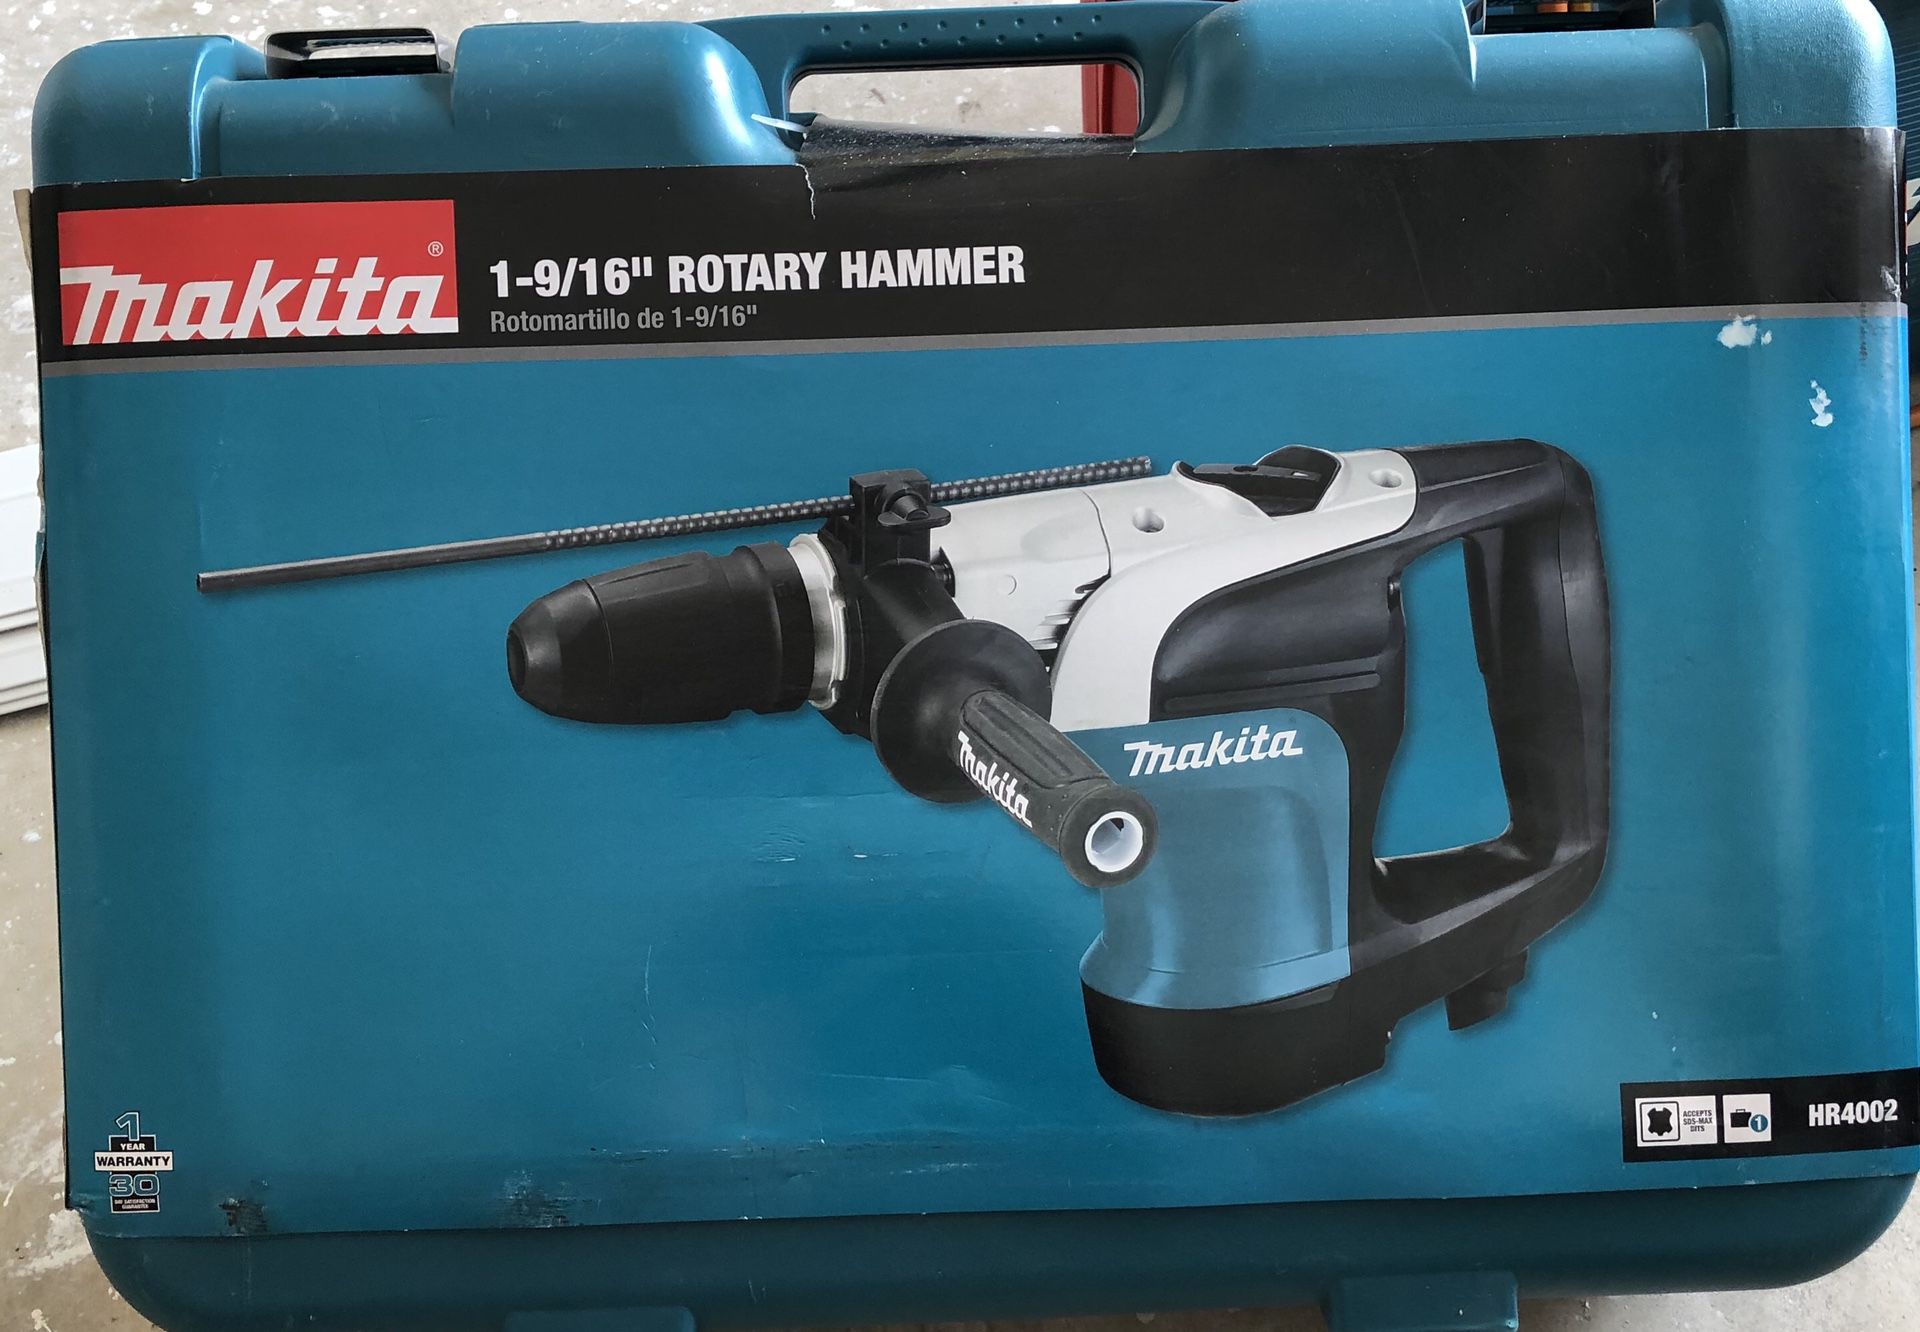 1-9/16” rotary hammer